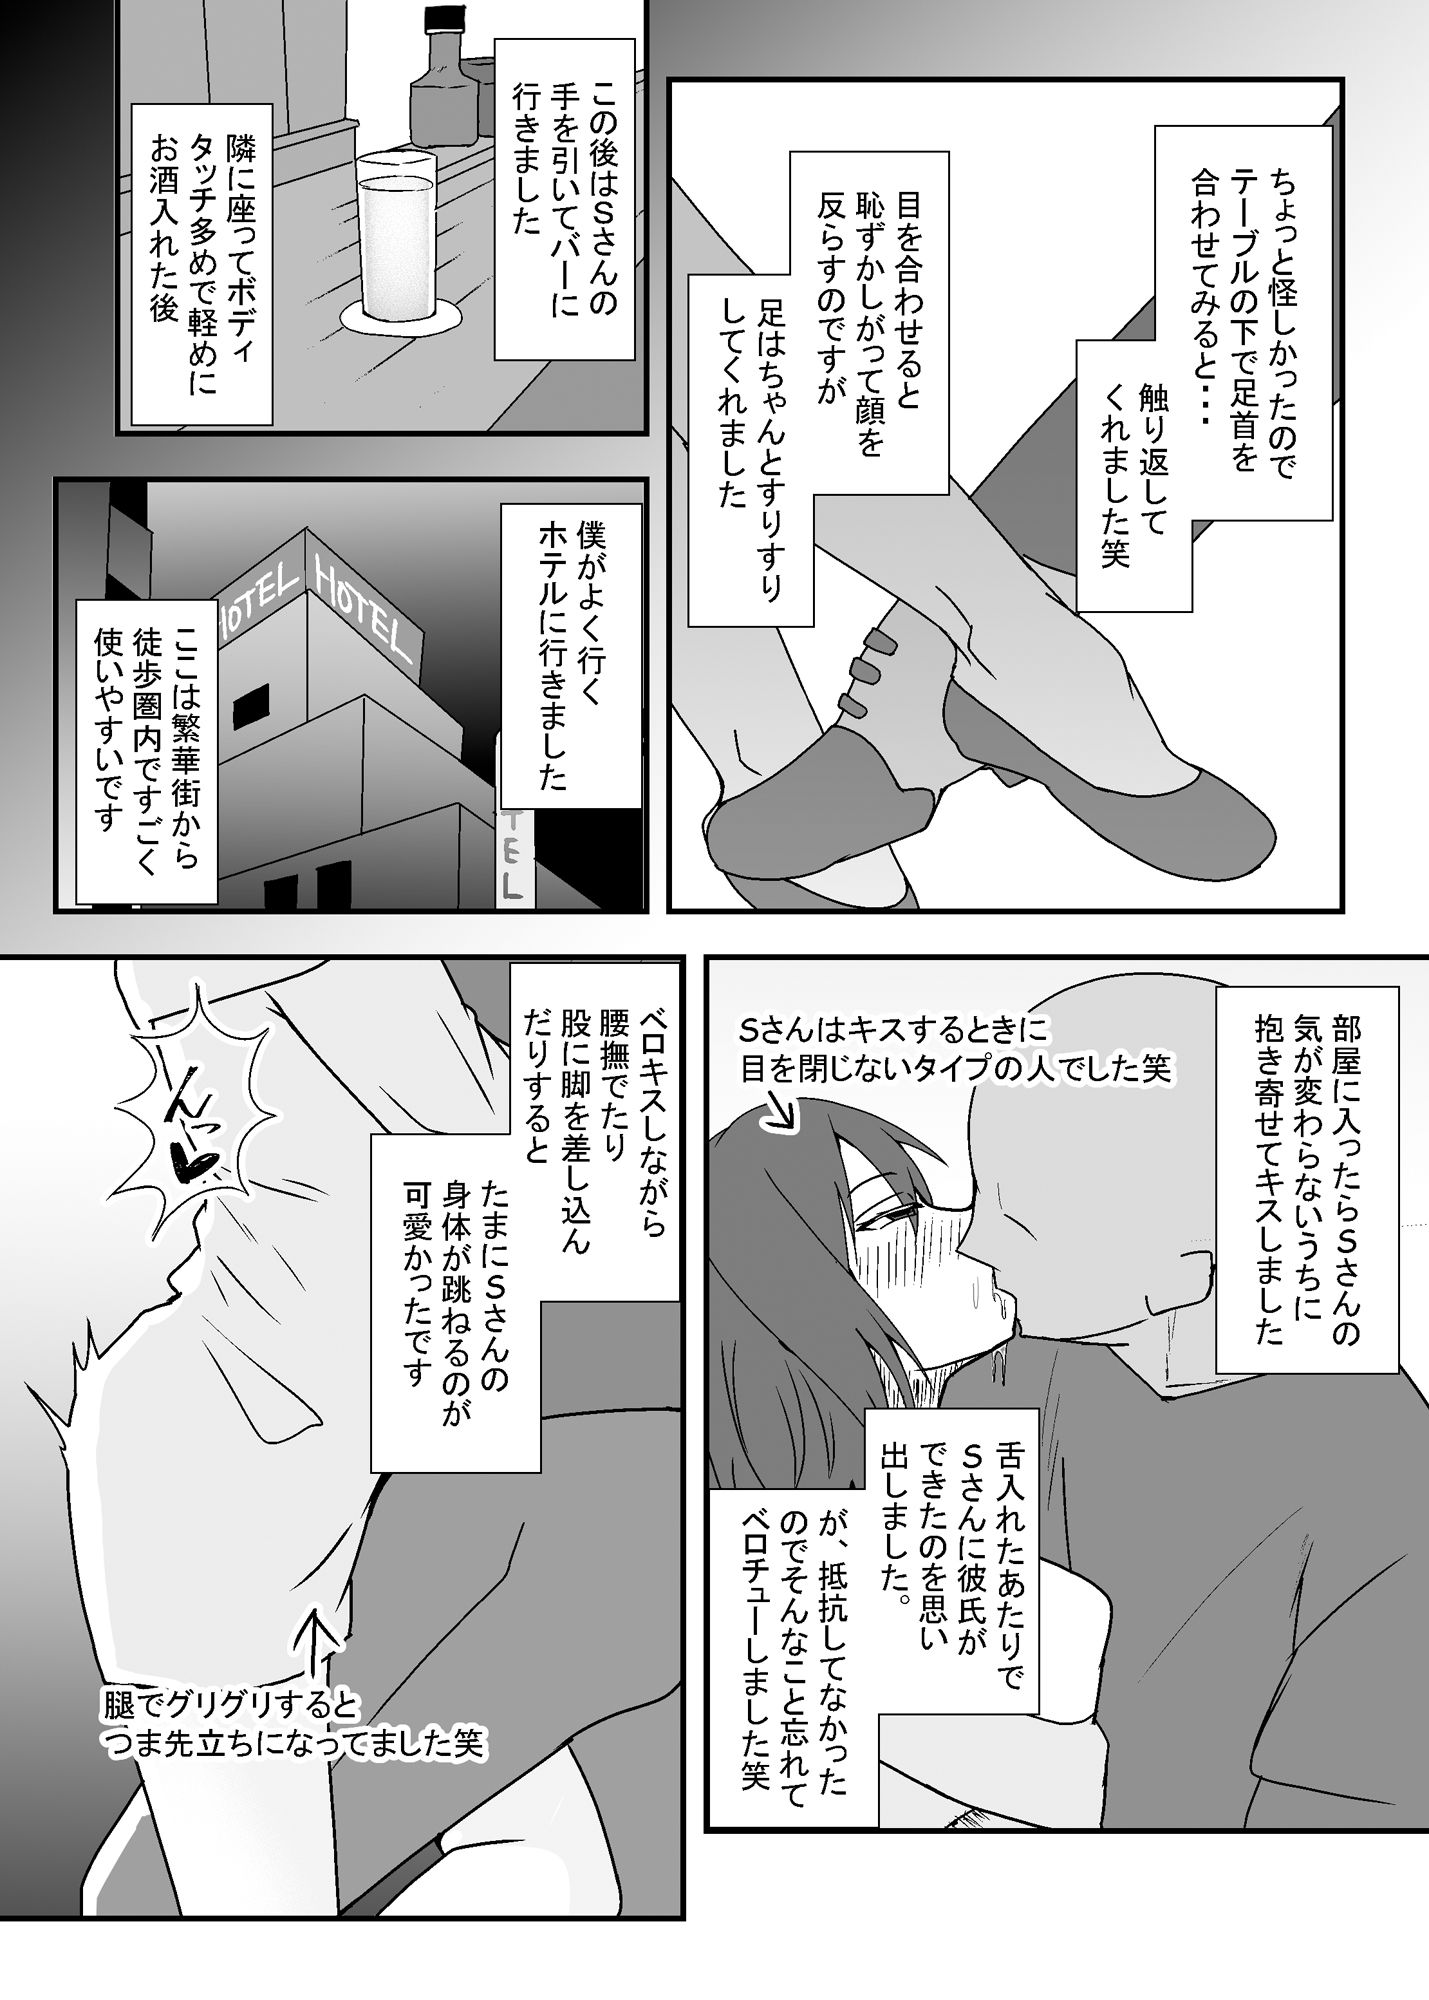 オフパコレポ漫画まとめ本3